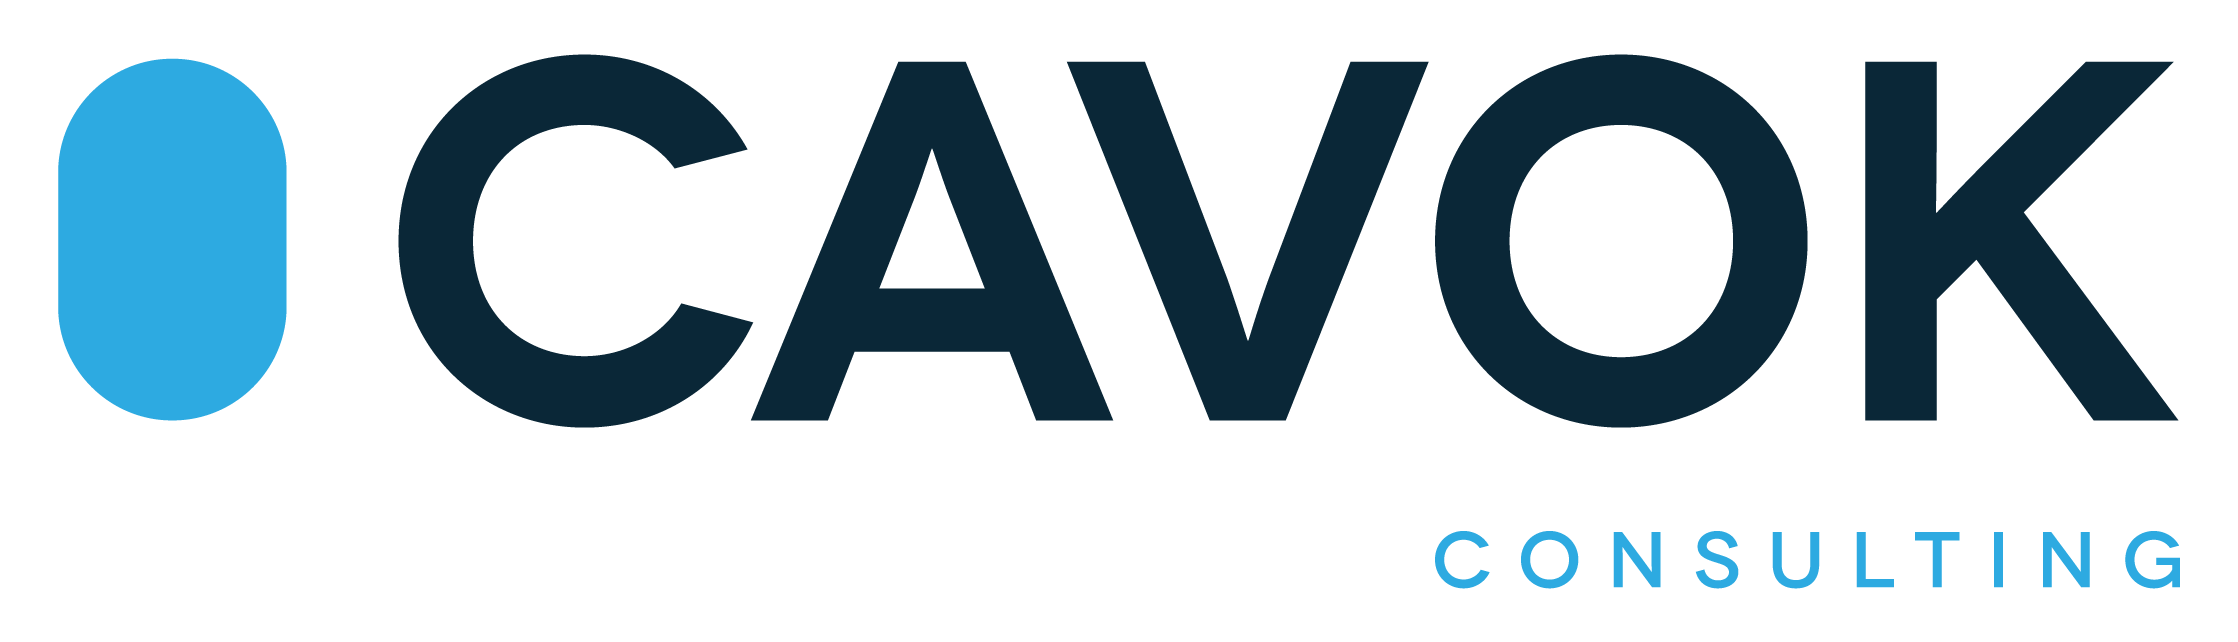 CAVOK Consulting - Consultoria de Gestão Estratégica